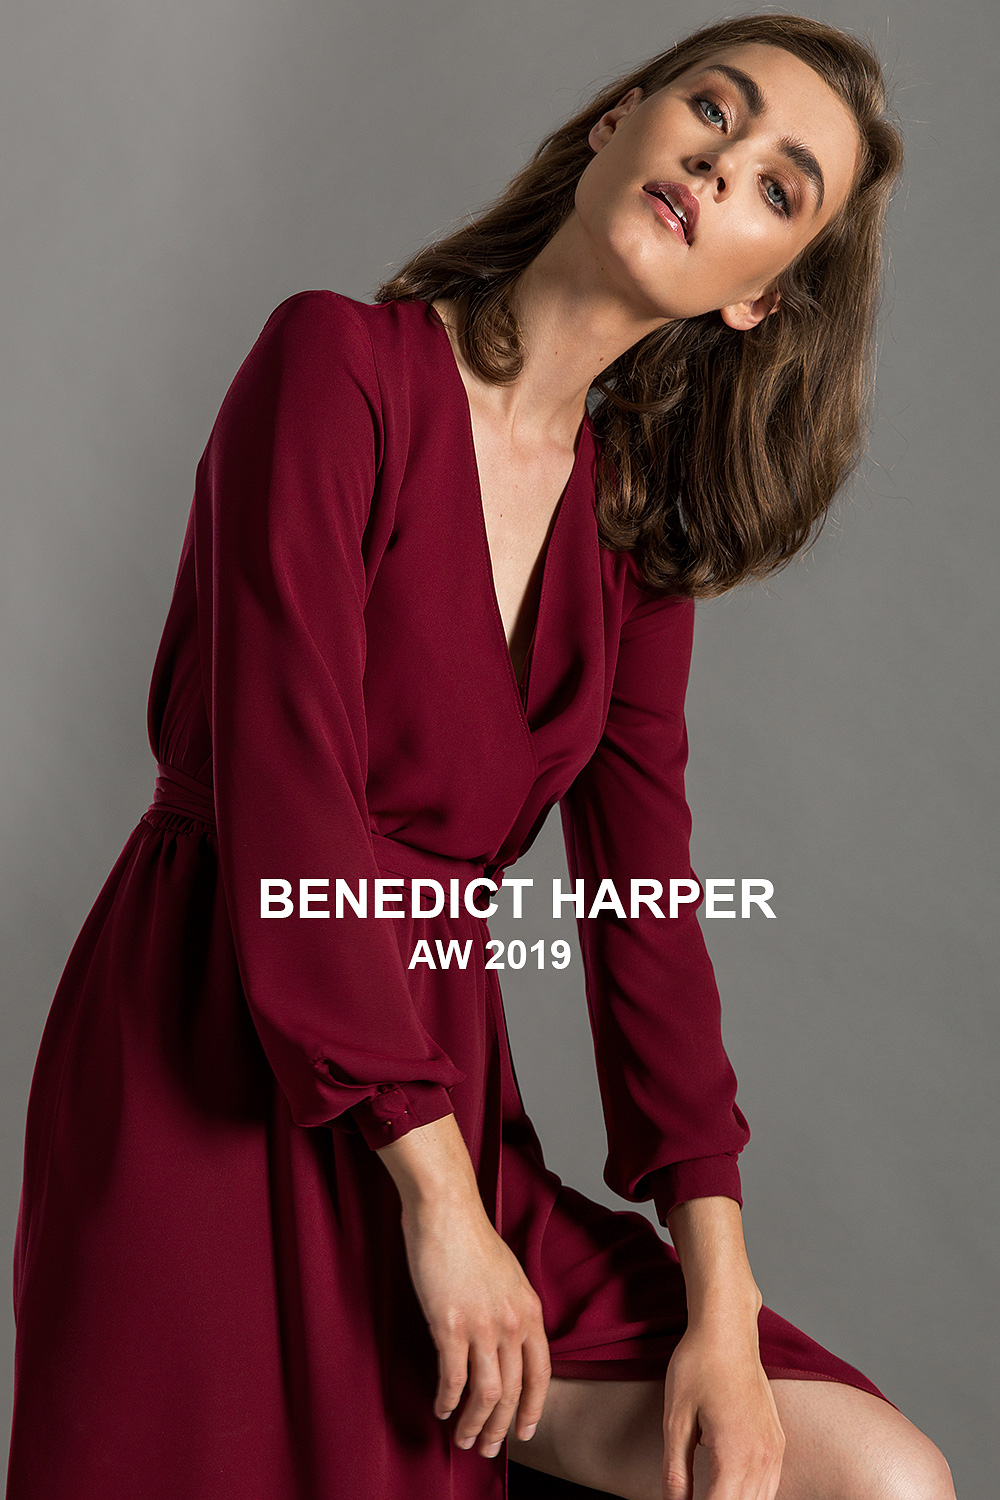 Benedict Harper / AW 2019